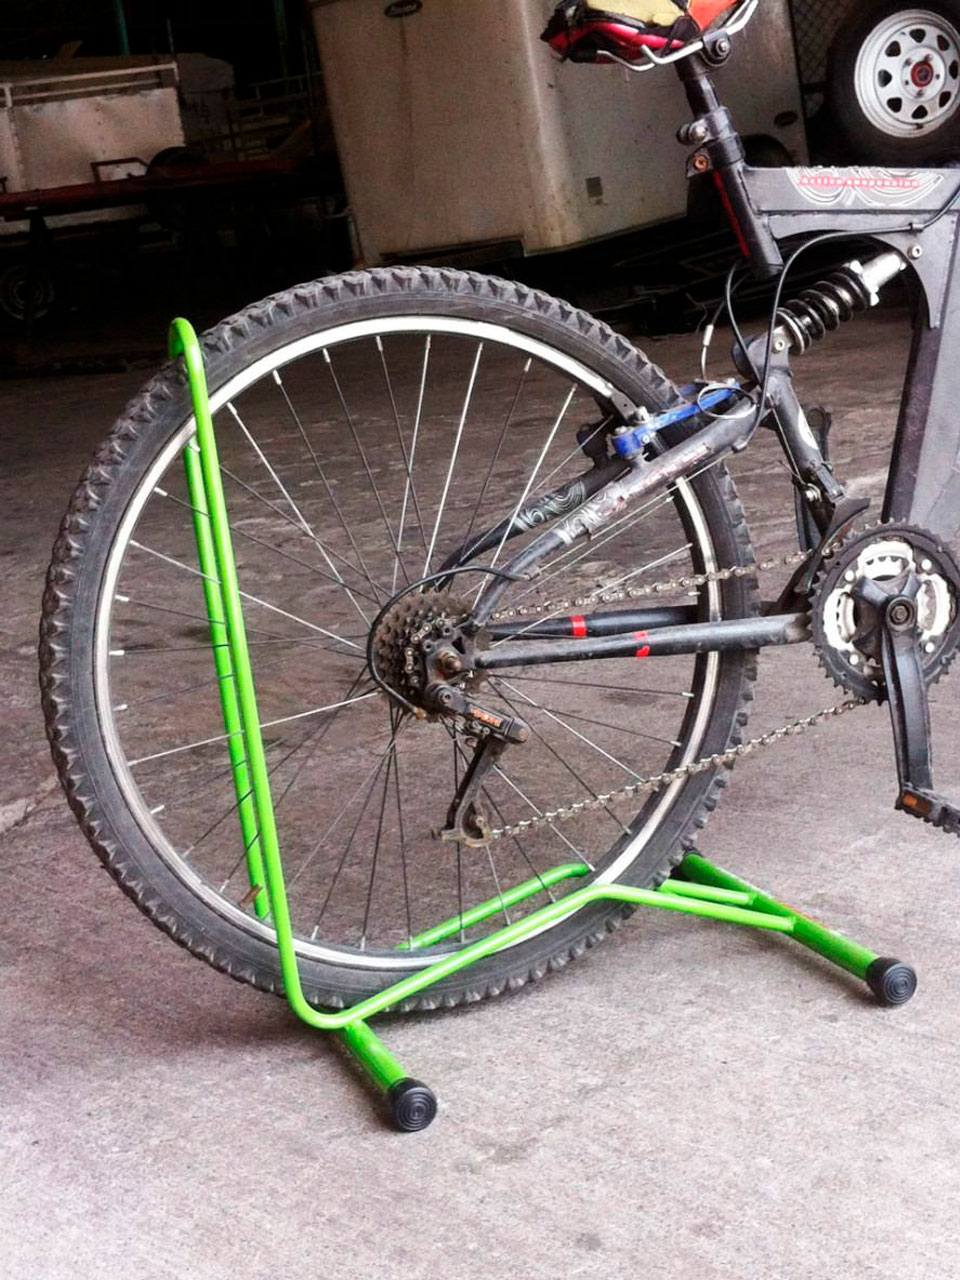 Cómo instalar un soporte para bicicletas - pisosblog 